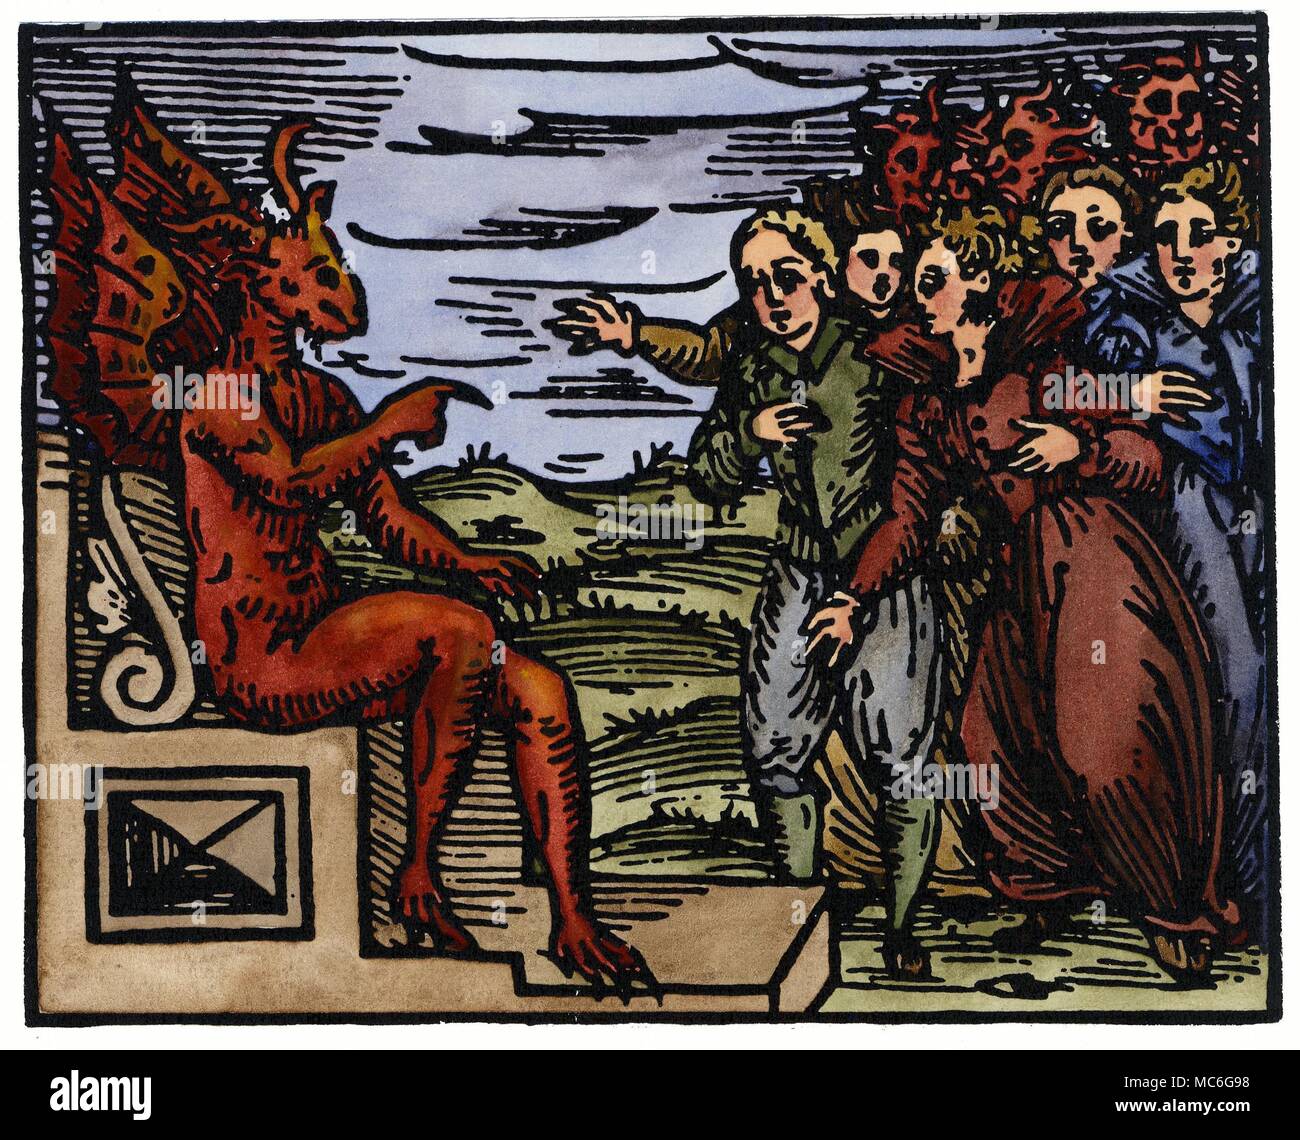 La sorcellerie - Démons Le Diable avec ses sbires, les sorcières et les sorciers. Il est de partir une campagne de destruction massive que les sorcières sont tenues de respecter. À la main, impression à partir de Francesco Maria Guazzo, Compendium Maleficarum, 1608. C'était le plus savant et précis de la sorcellerie médiévale des manuels, et à certains égards (parce qu'il a rendu hommage aux superstitions de la pire espèce) l'un des plus horrible. Banque D'Images